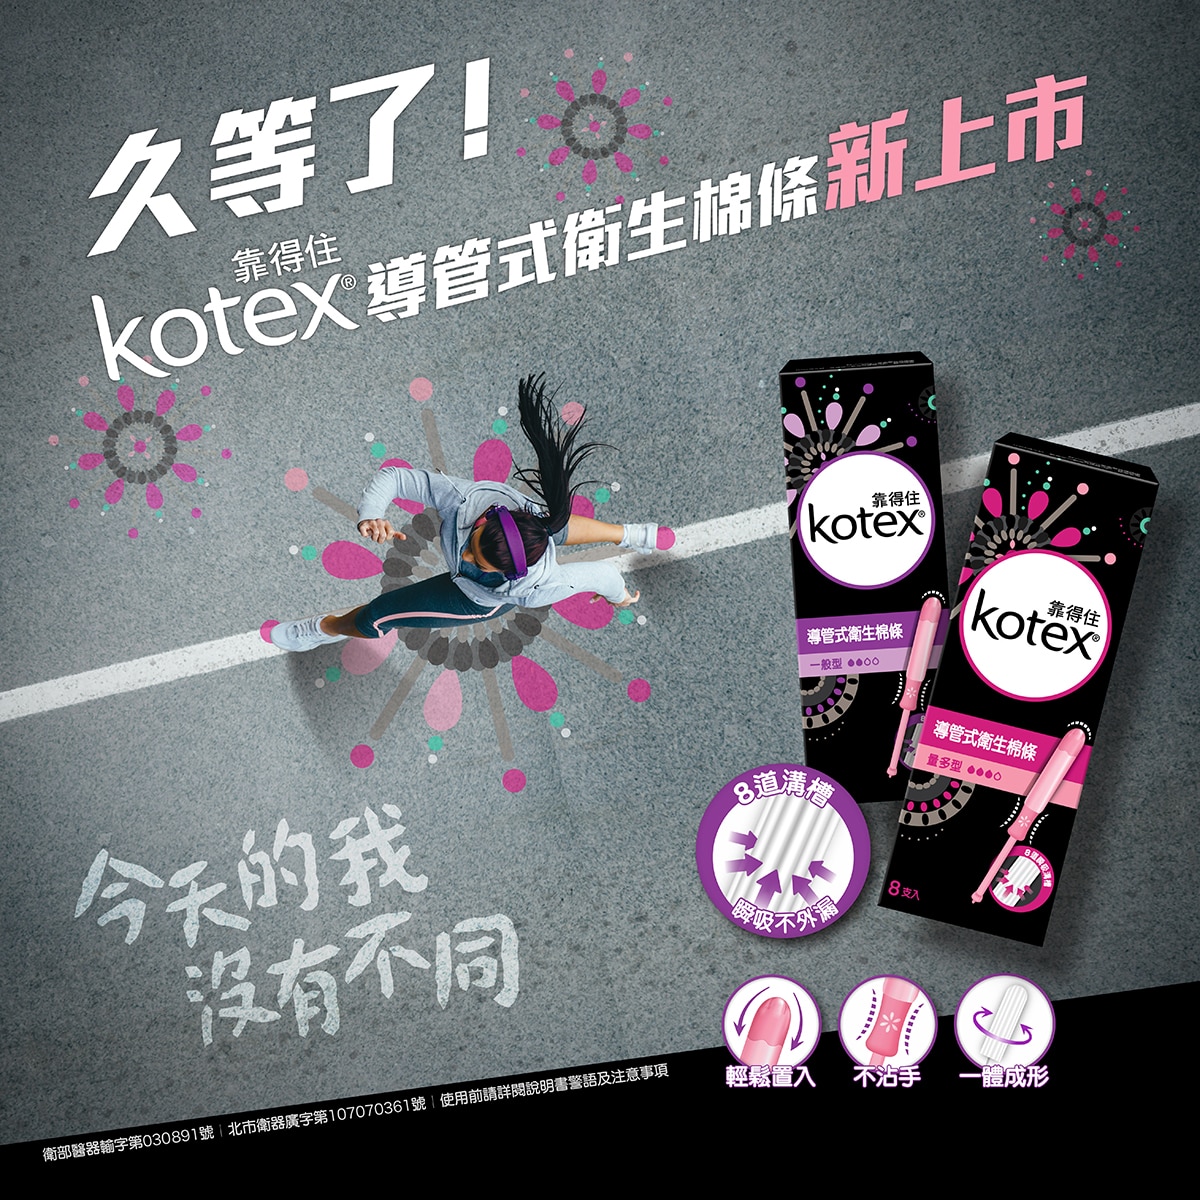 Kotex 導管式衛生棉條 量多型,8道溝槽,瞬間不外露,輕鬆置入,不沾手,一體成型。